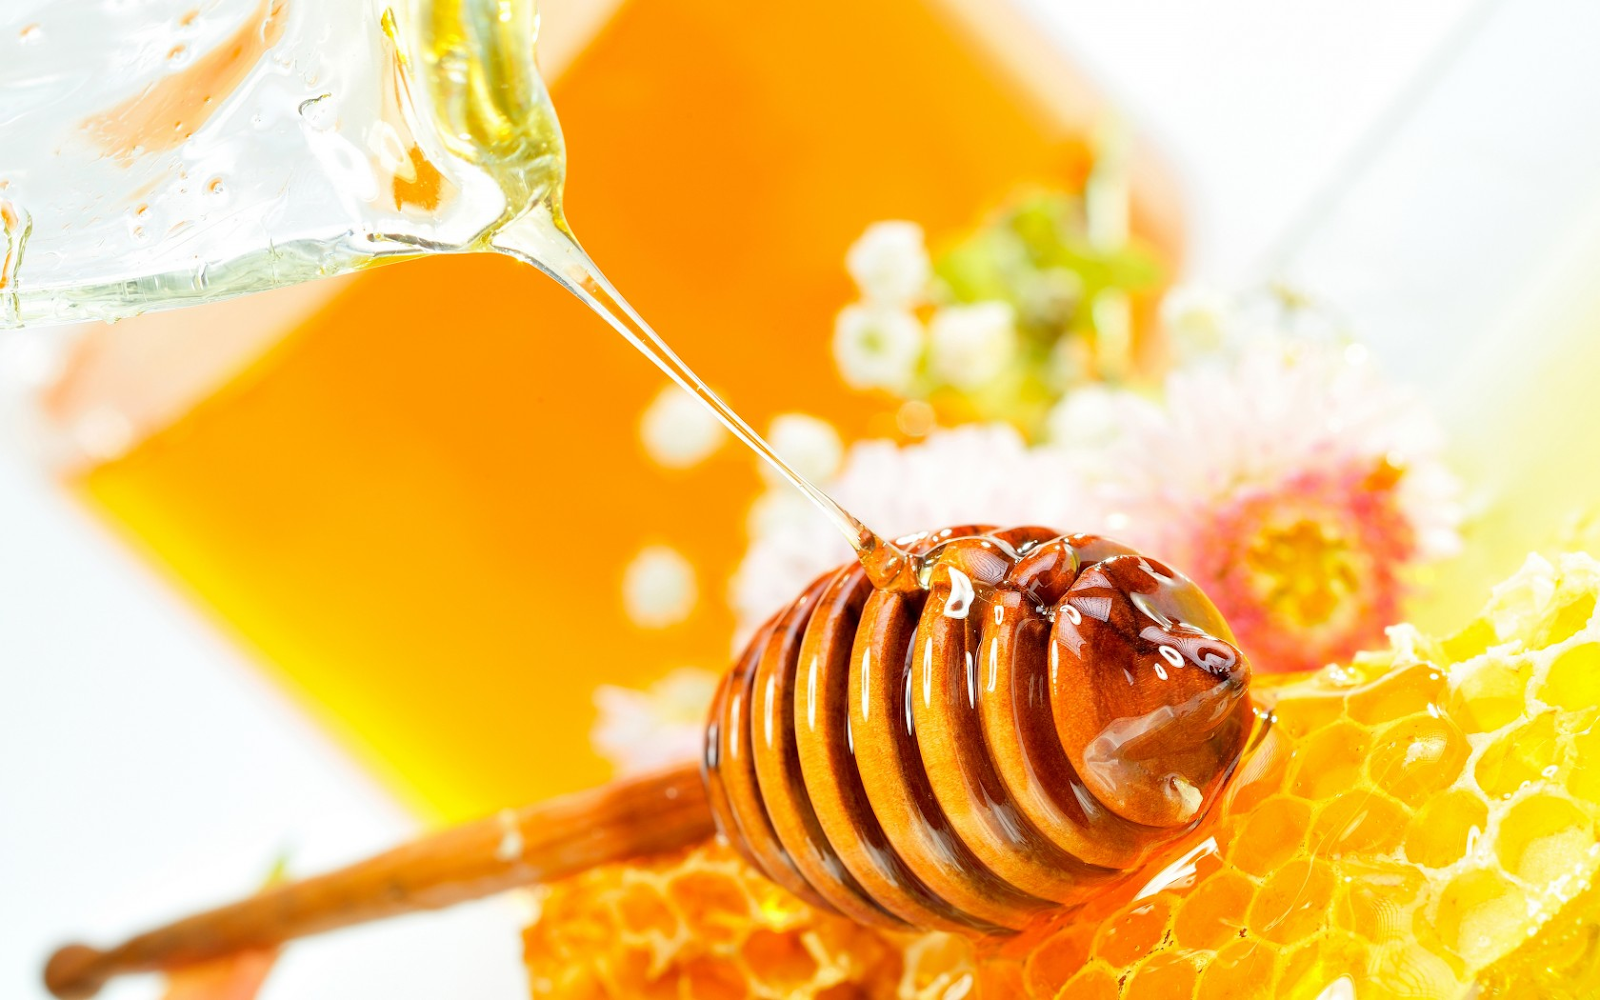 Da mặt của bạn sẽ trở lên mềm và mịn ngay lập tức với mật ong